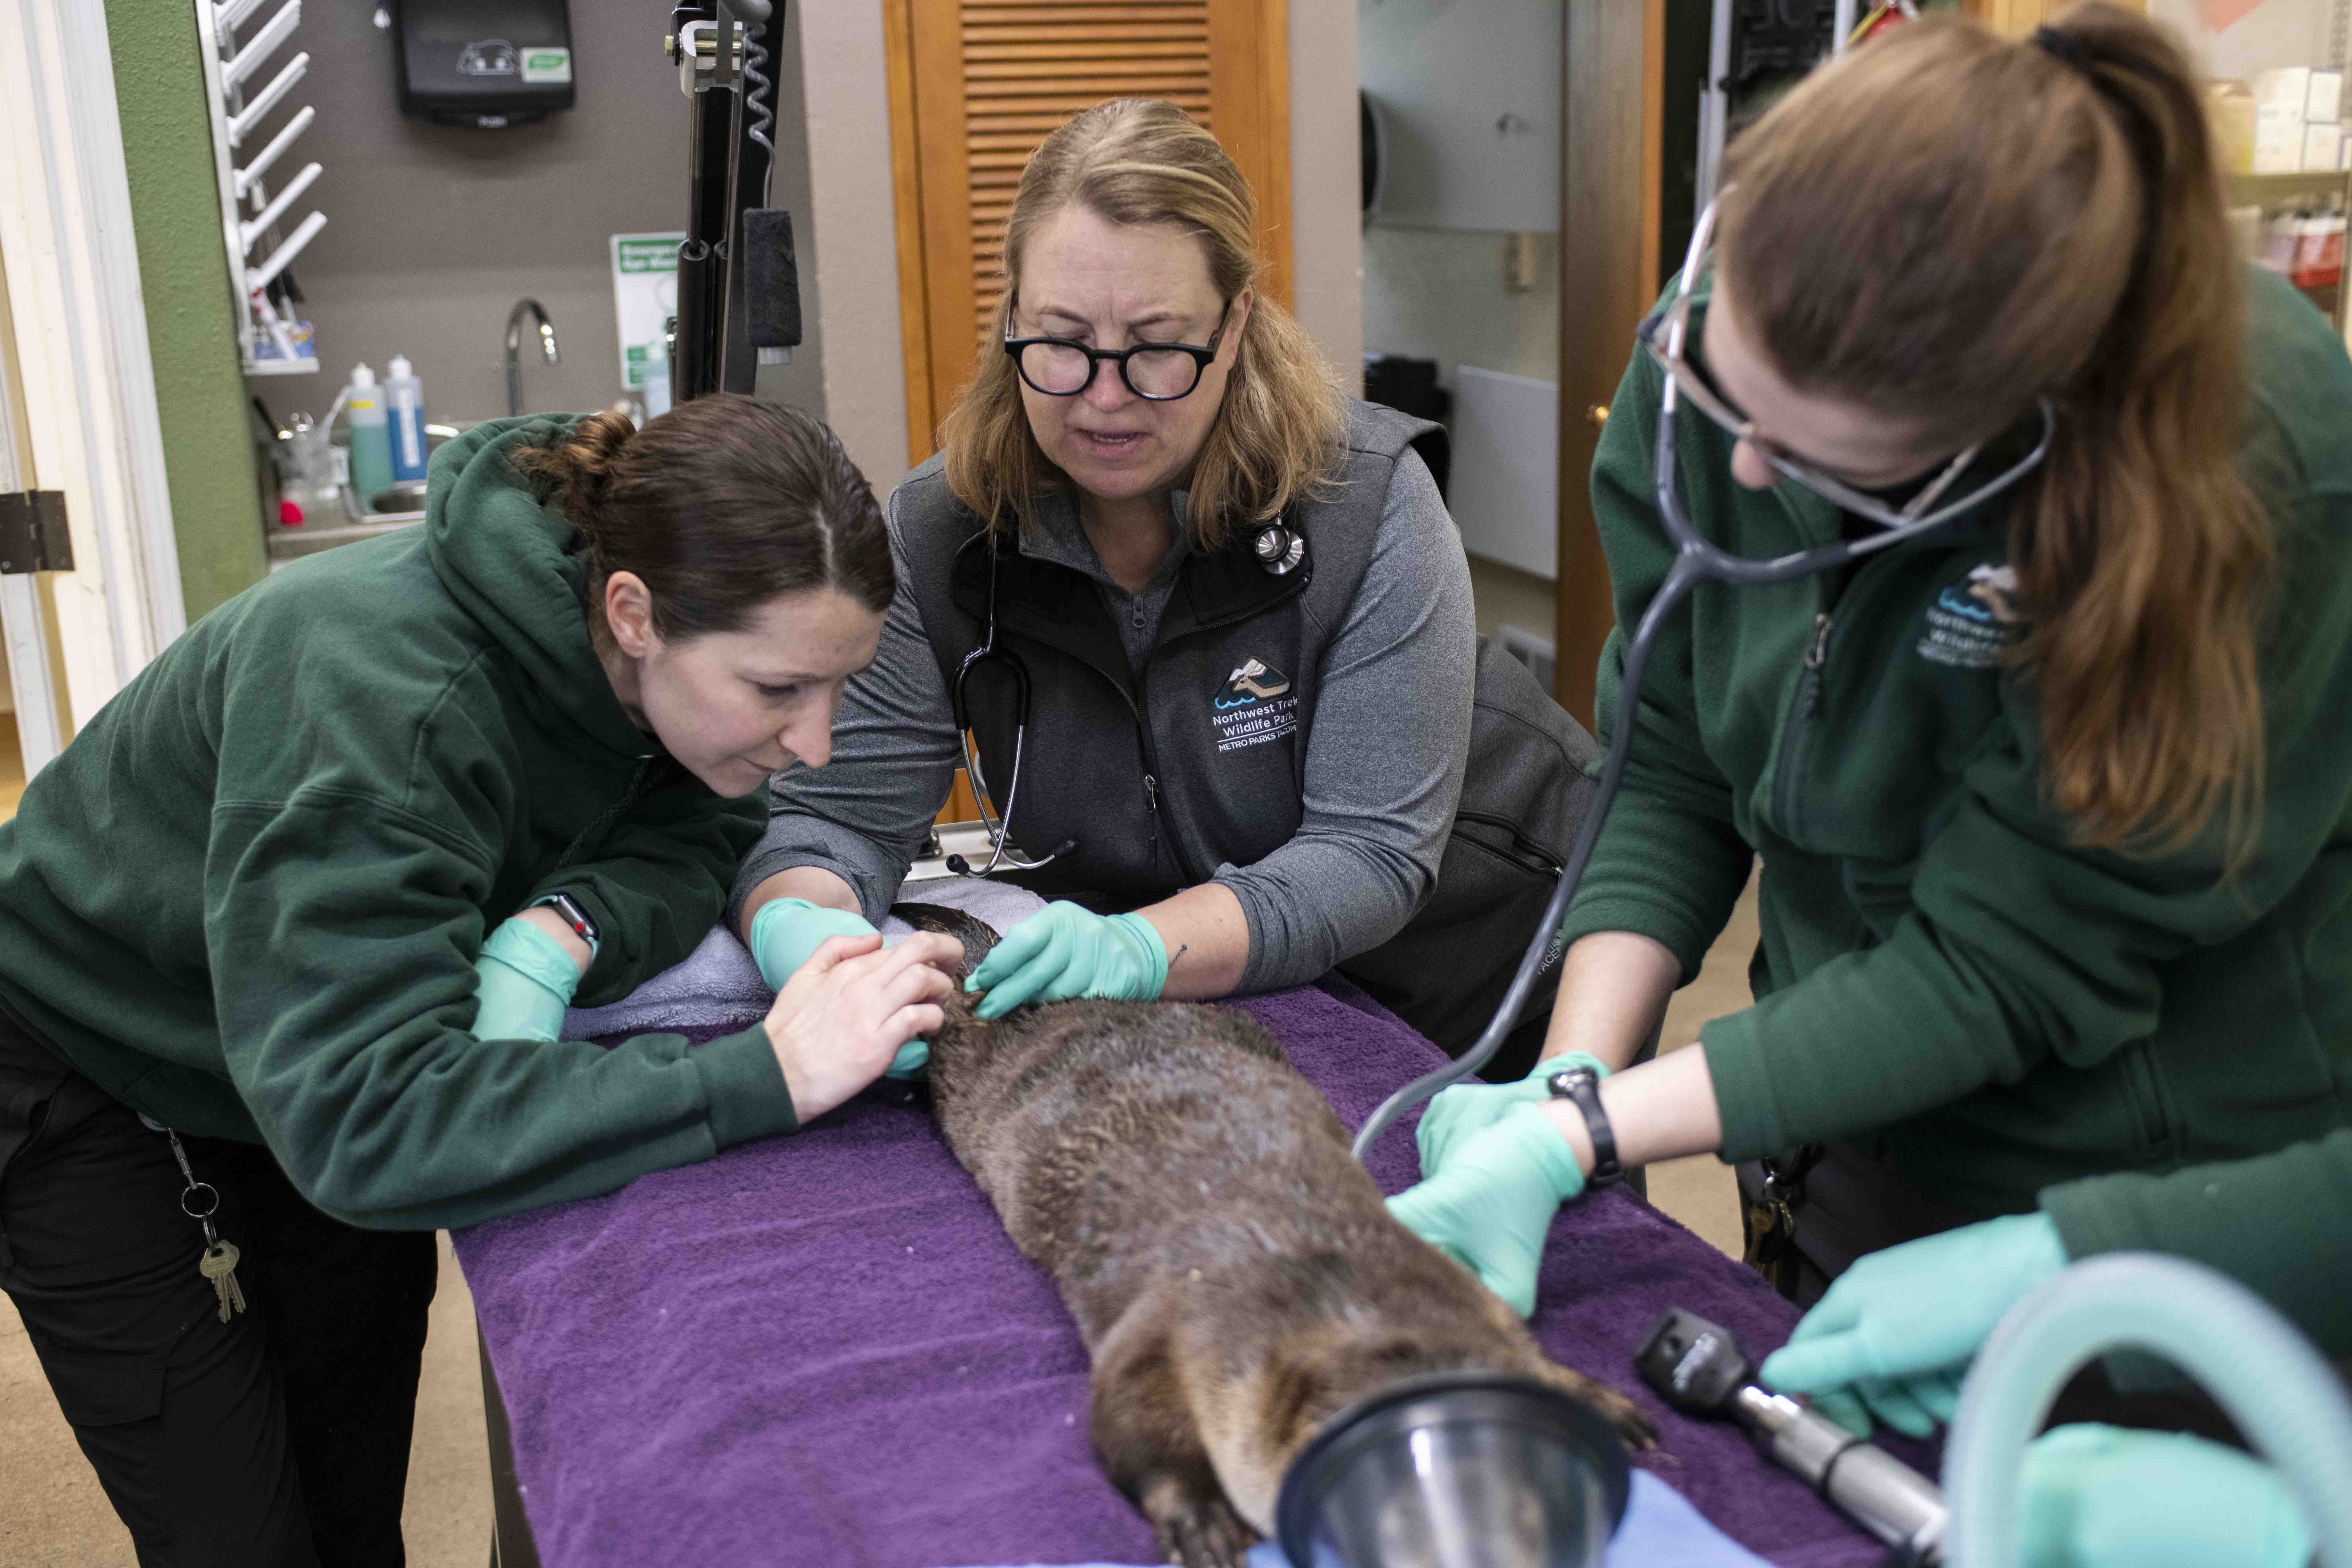 river otter exam three women